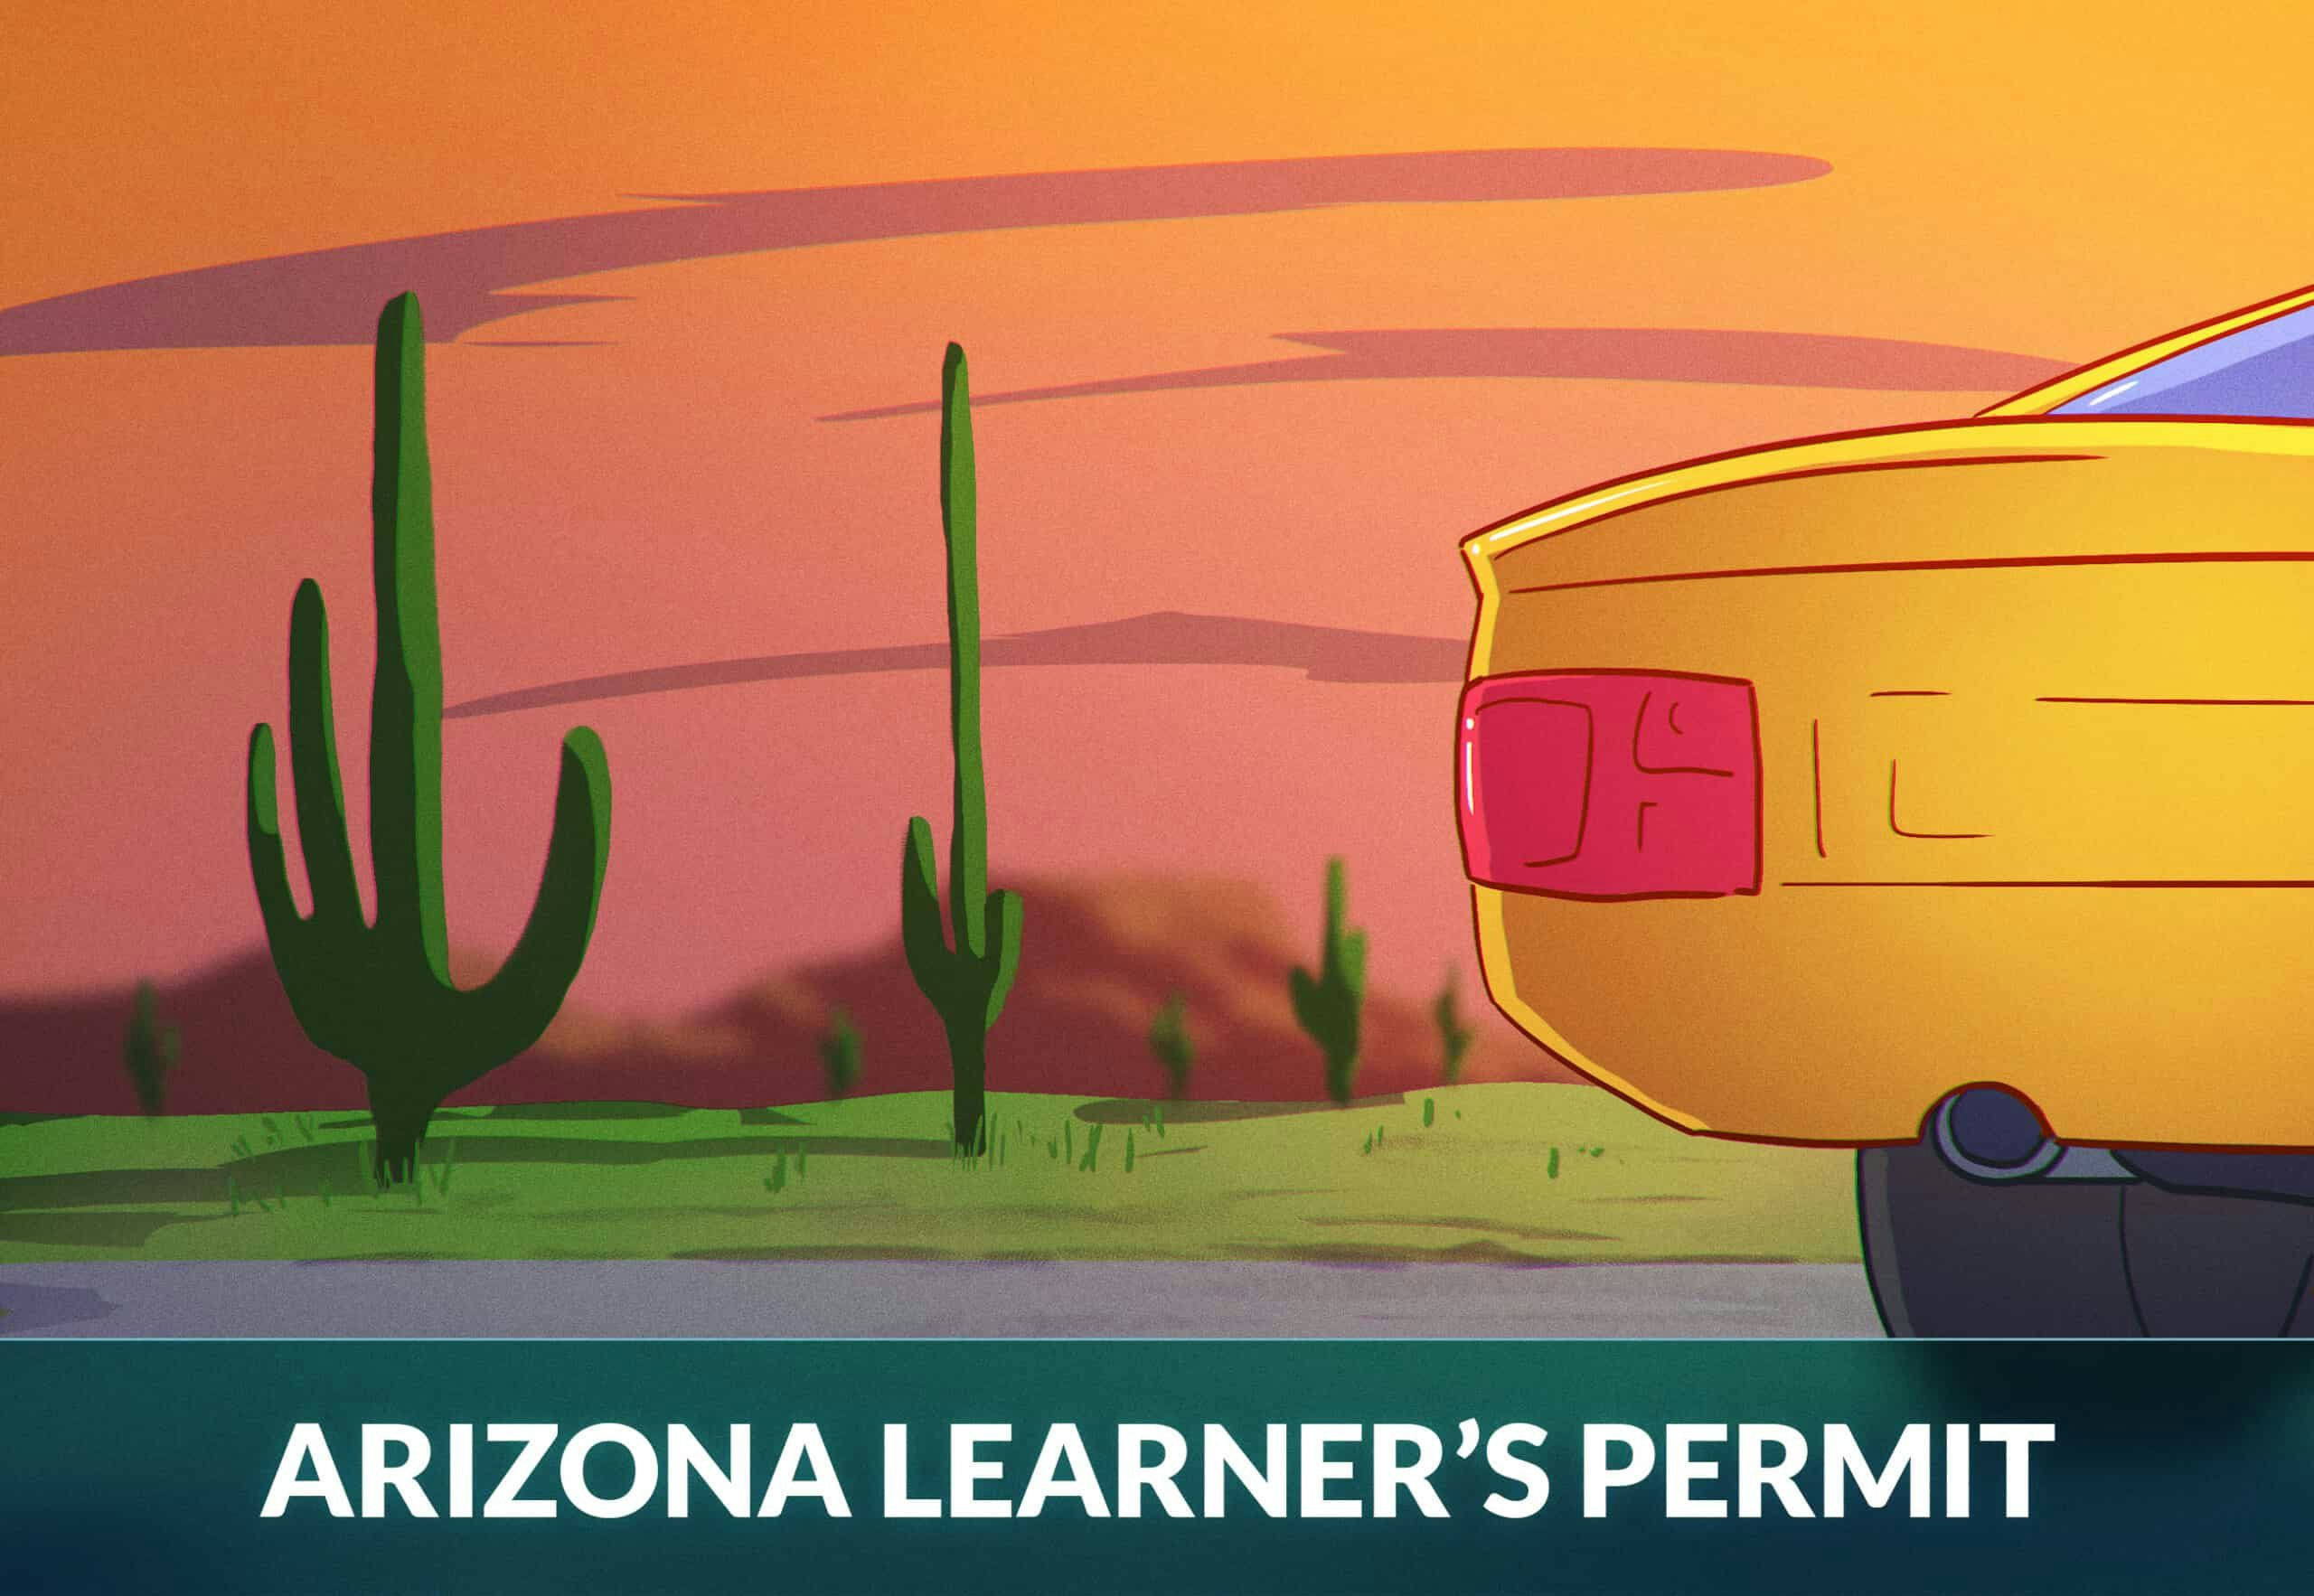 Arizona Learner's Permit